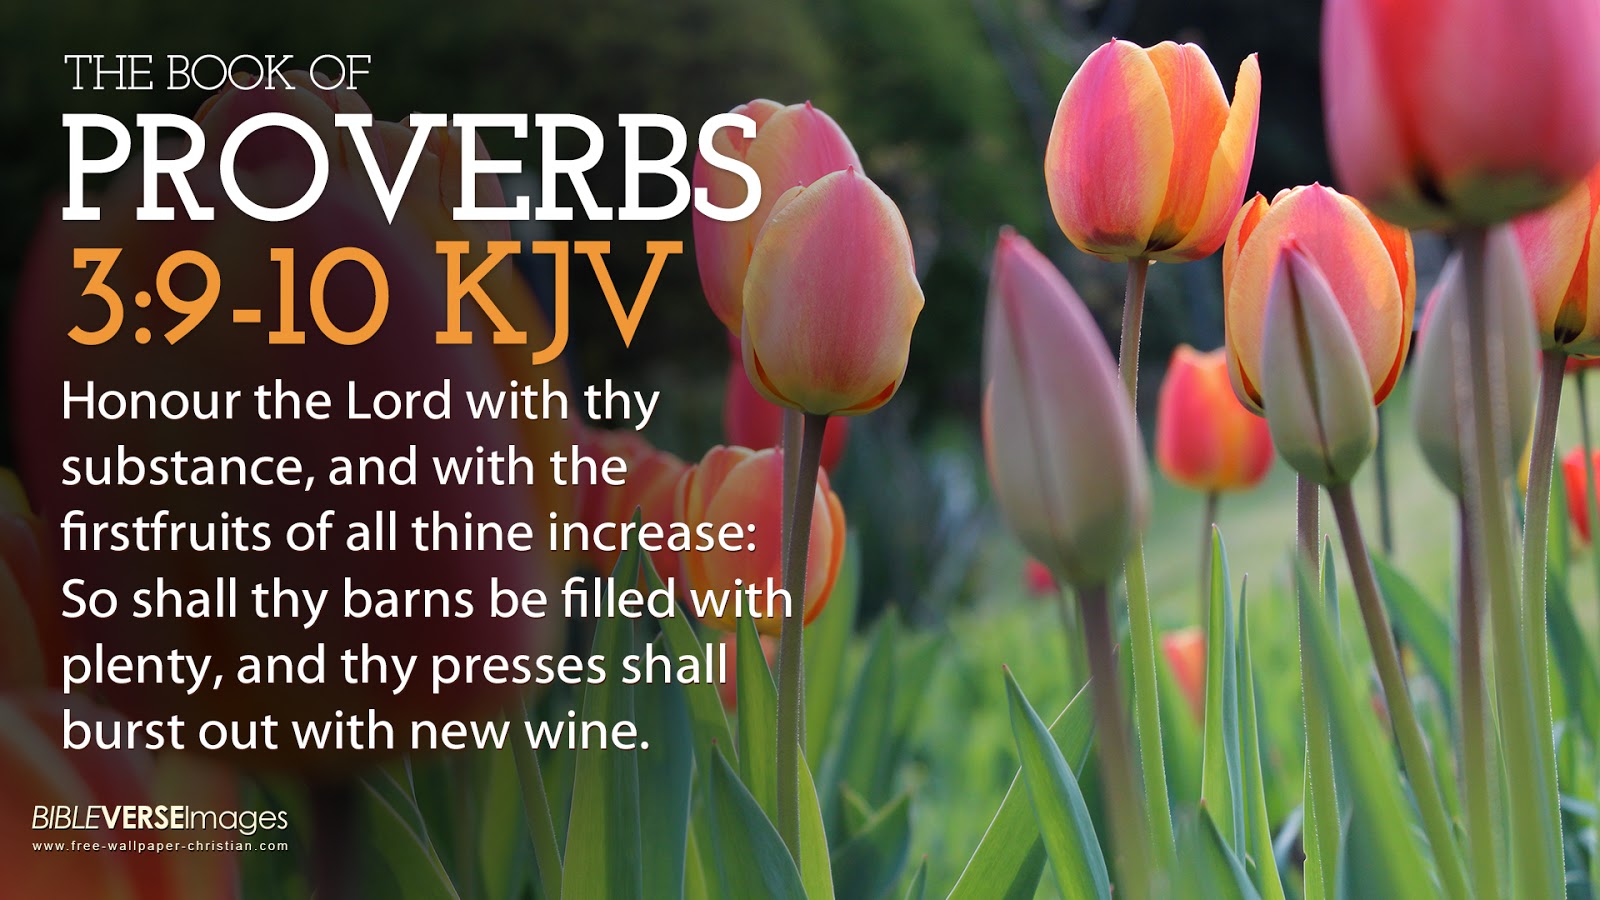 Bible Verse Wallpaper proverbs 3 9 10 King James Versionjpg 1600x900